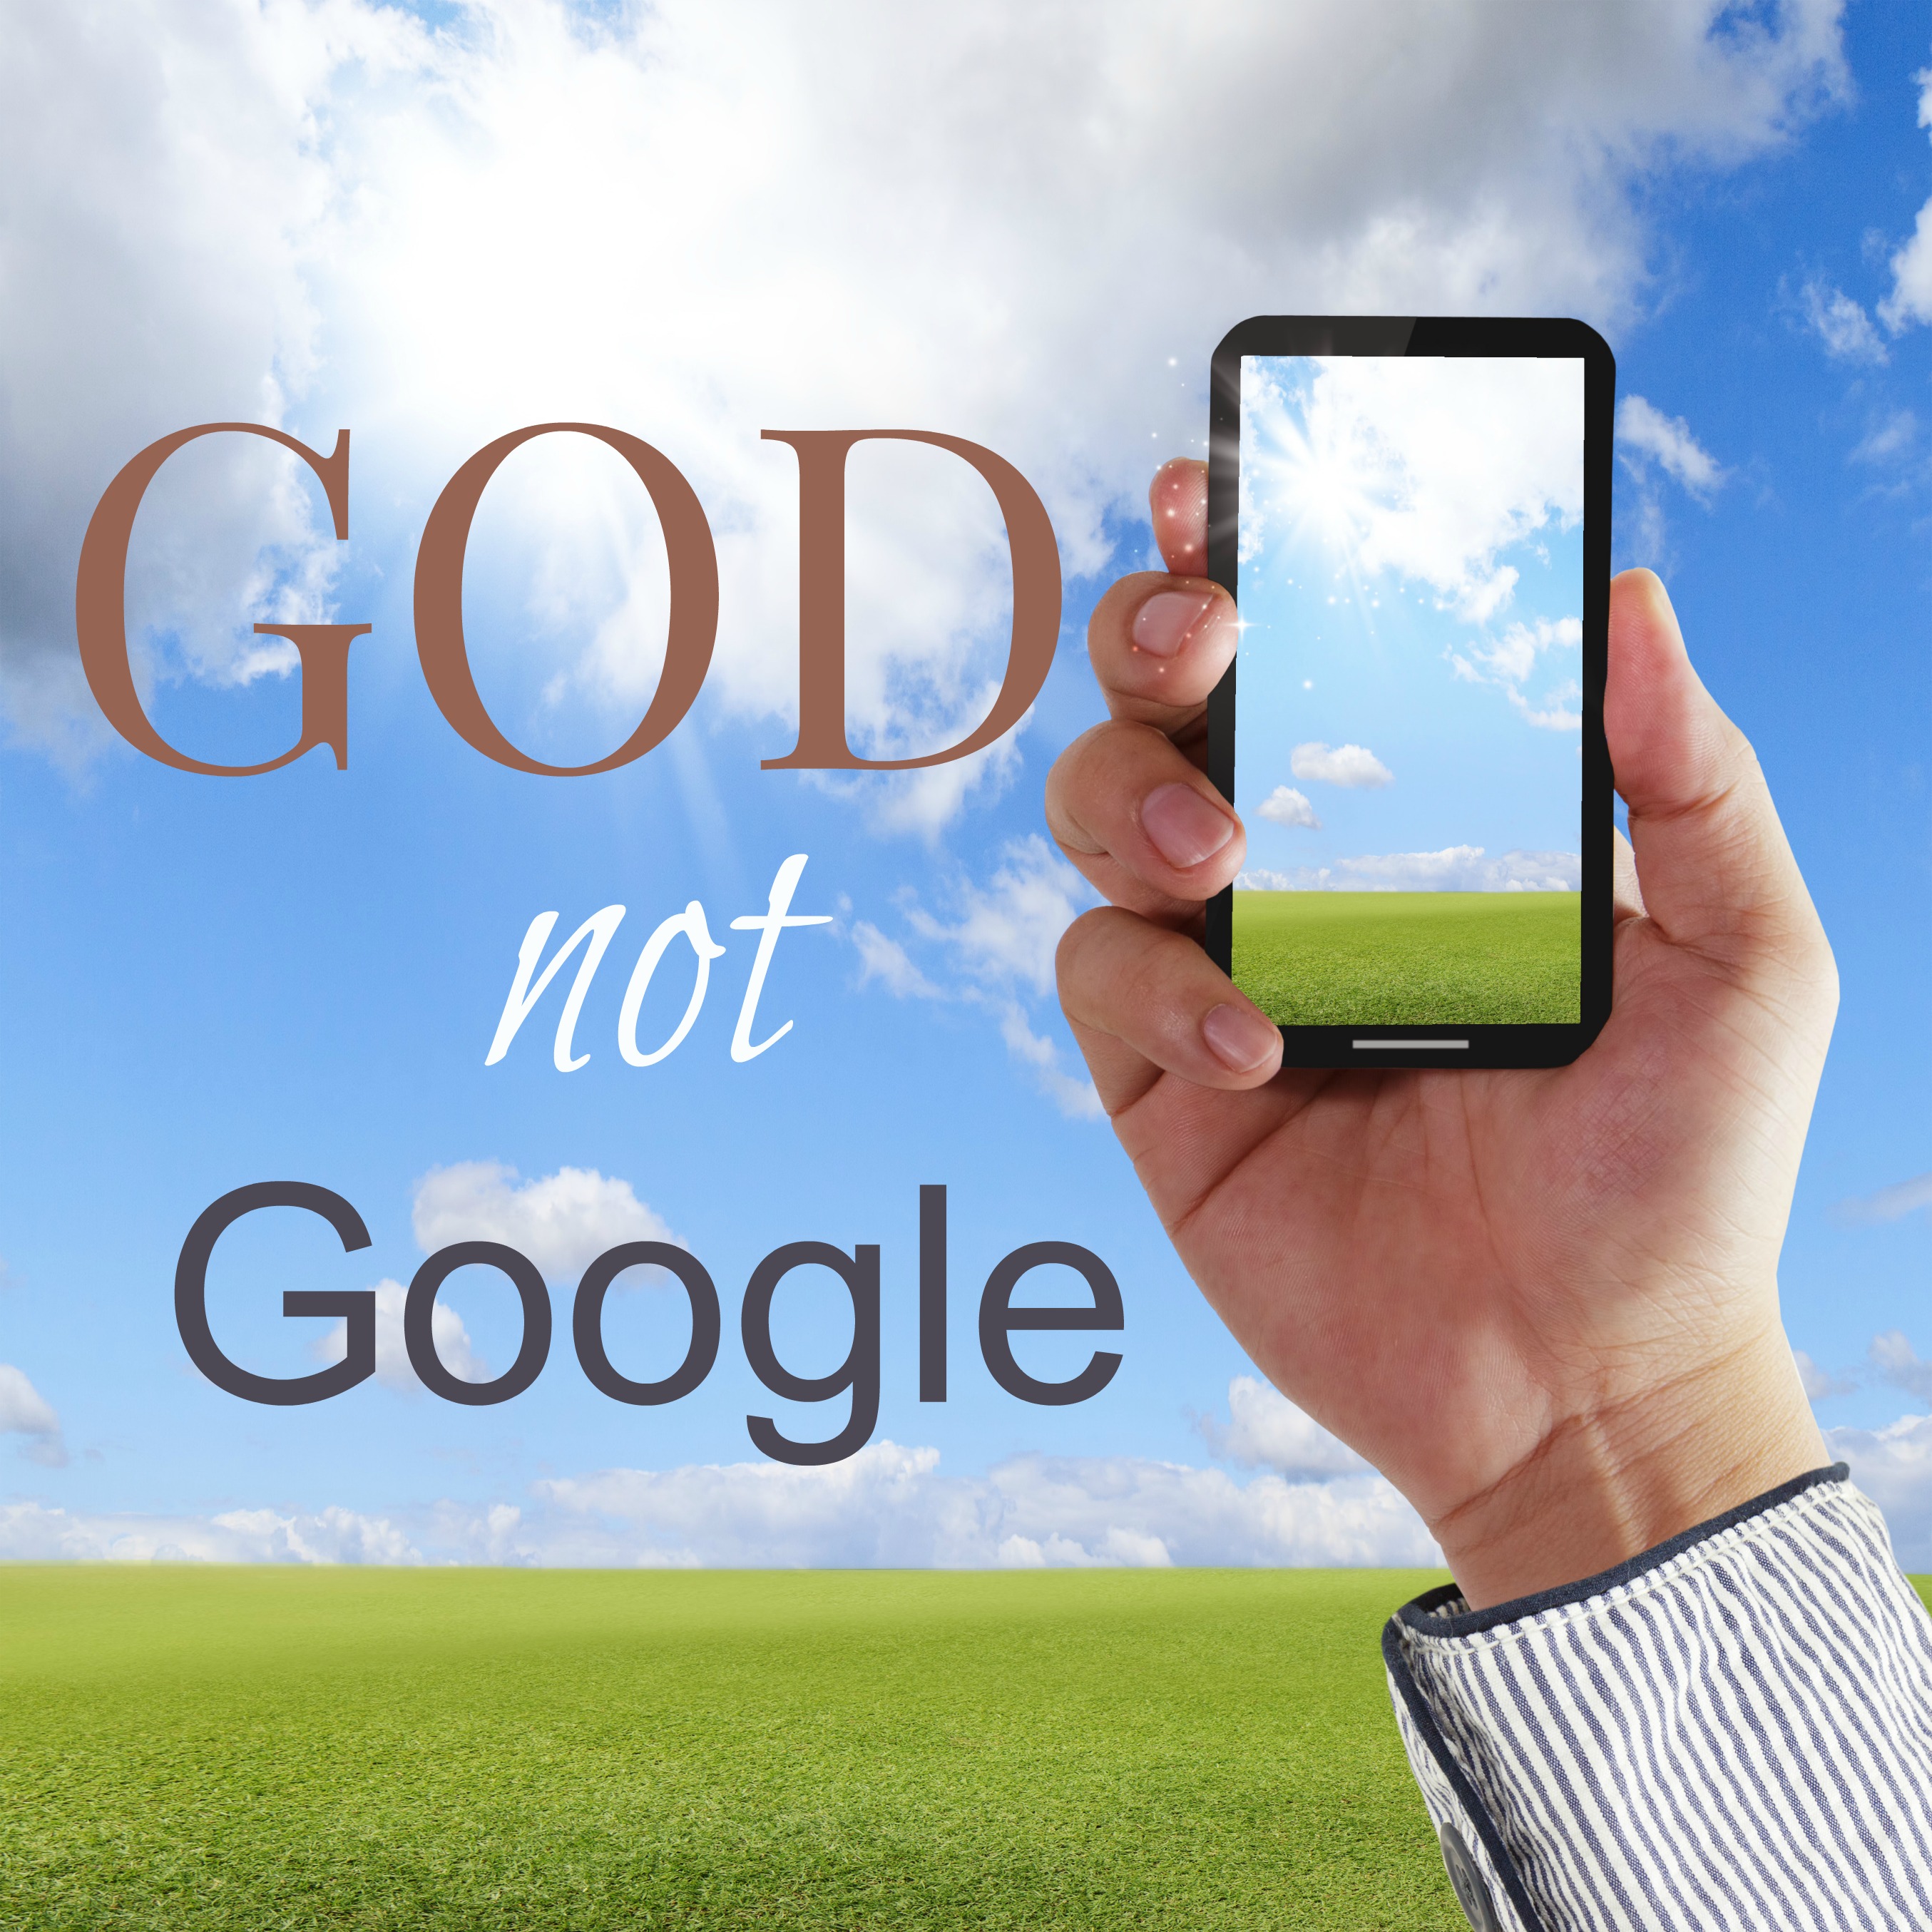 God, Not Google